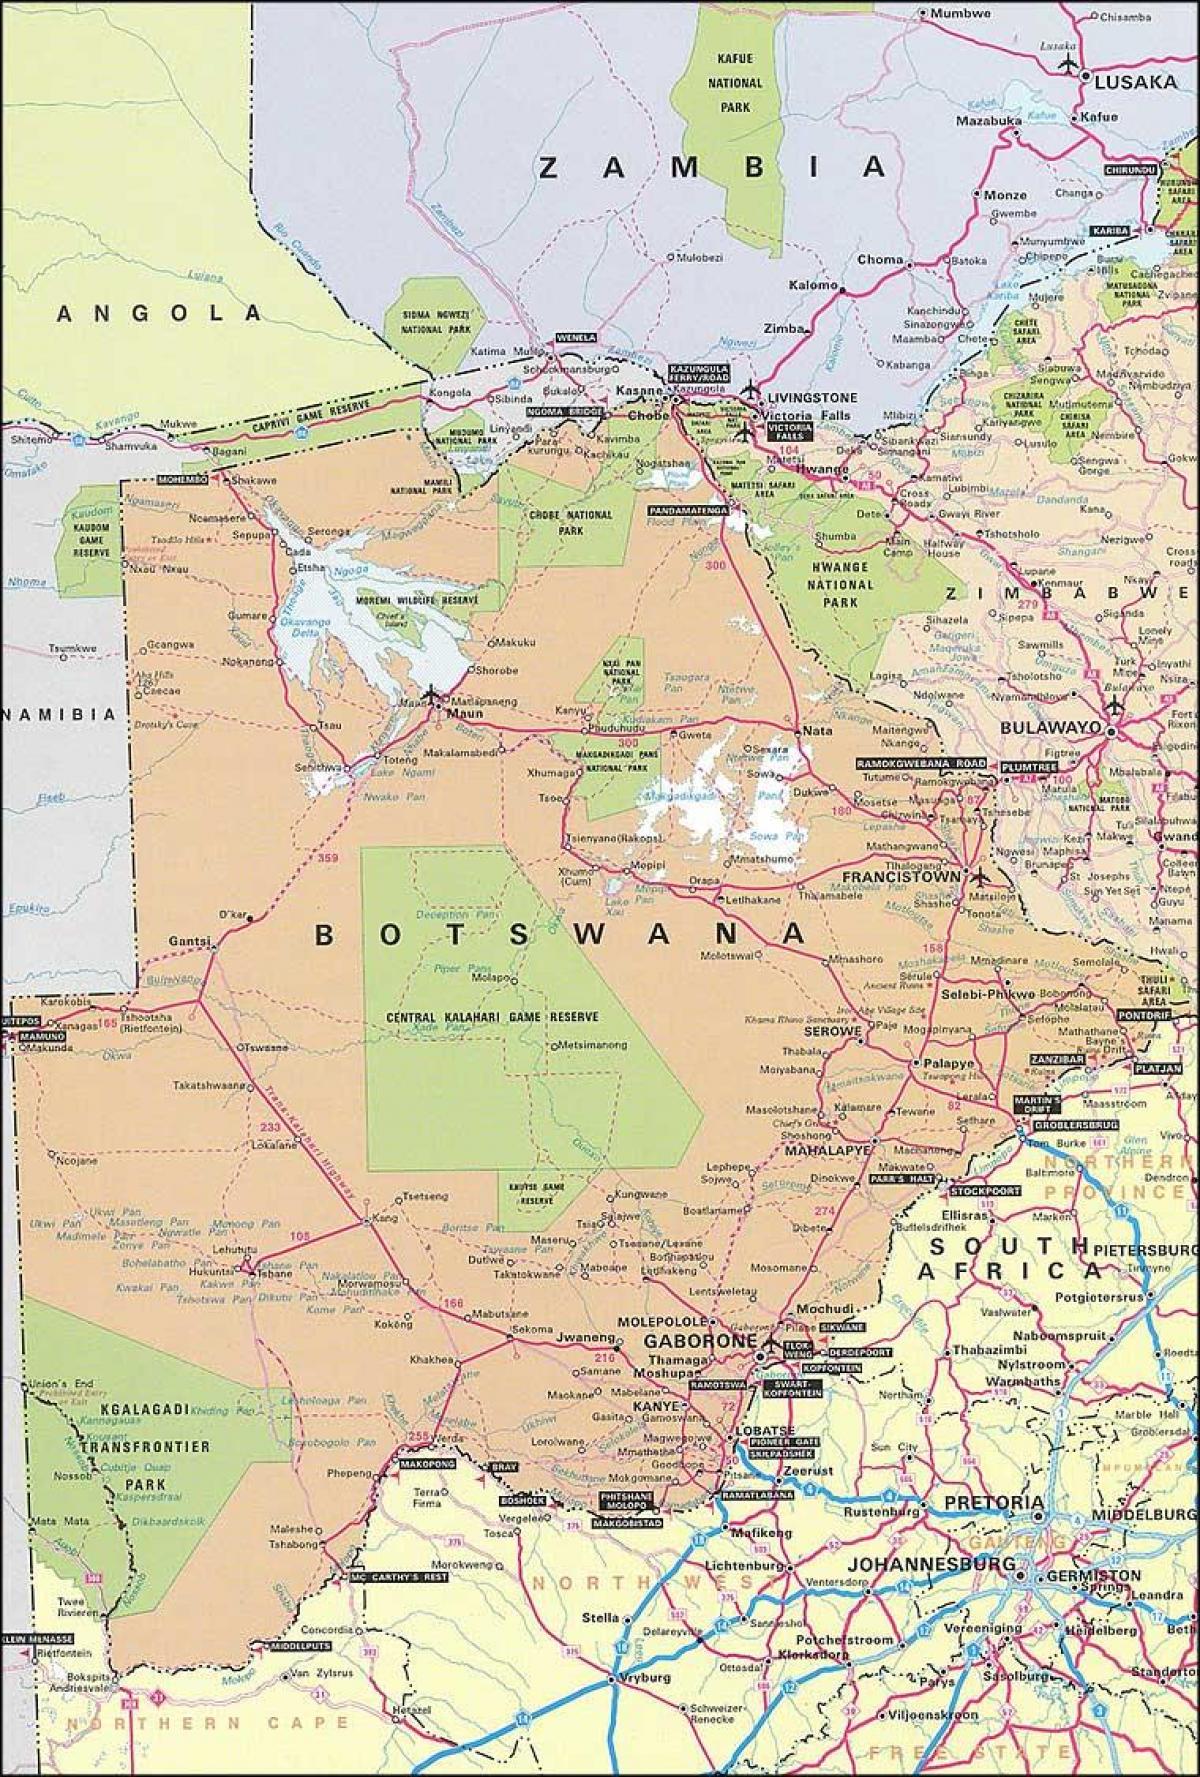 χάρτης της Μποτσουάνα χάρτης με τις αποστάσεις